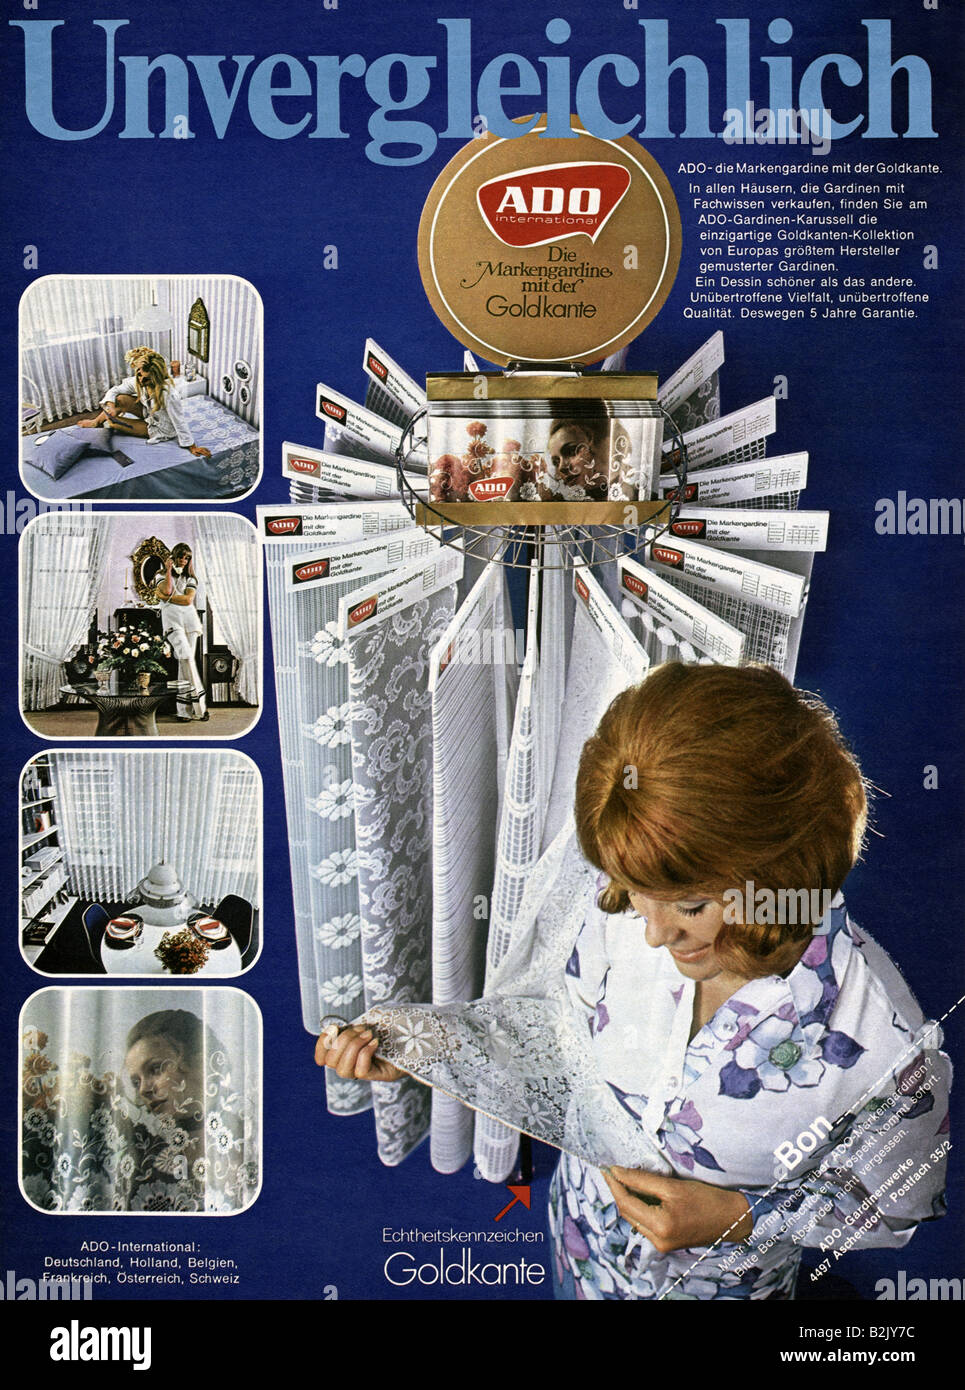 Werbung, Textil, ADO-Netzvorhang mit goldenem Rand, Werbung, 1970  Stockfotografie - Alamy